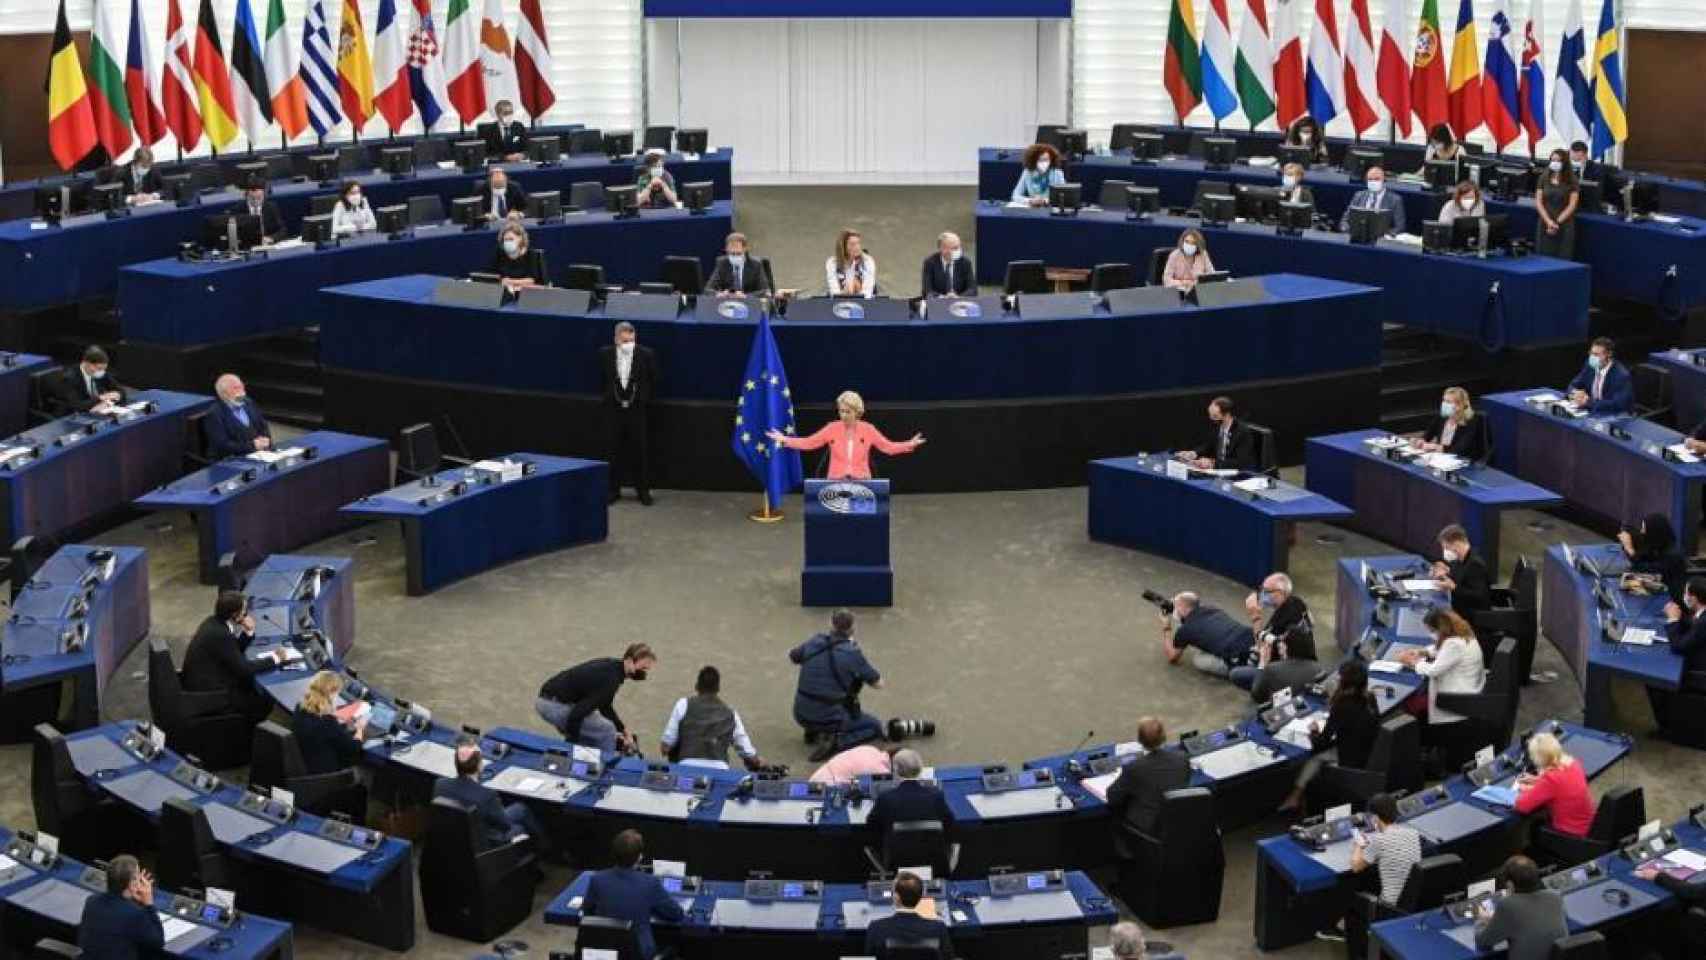 La presidenta de la Comisión, Ursula von der Leyen, se dirige al pleno del Parlamento Europeo.